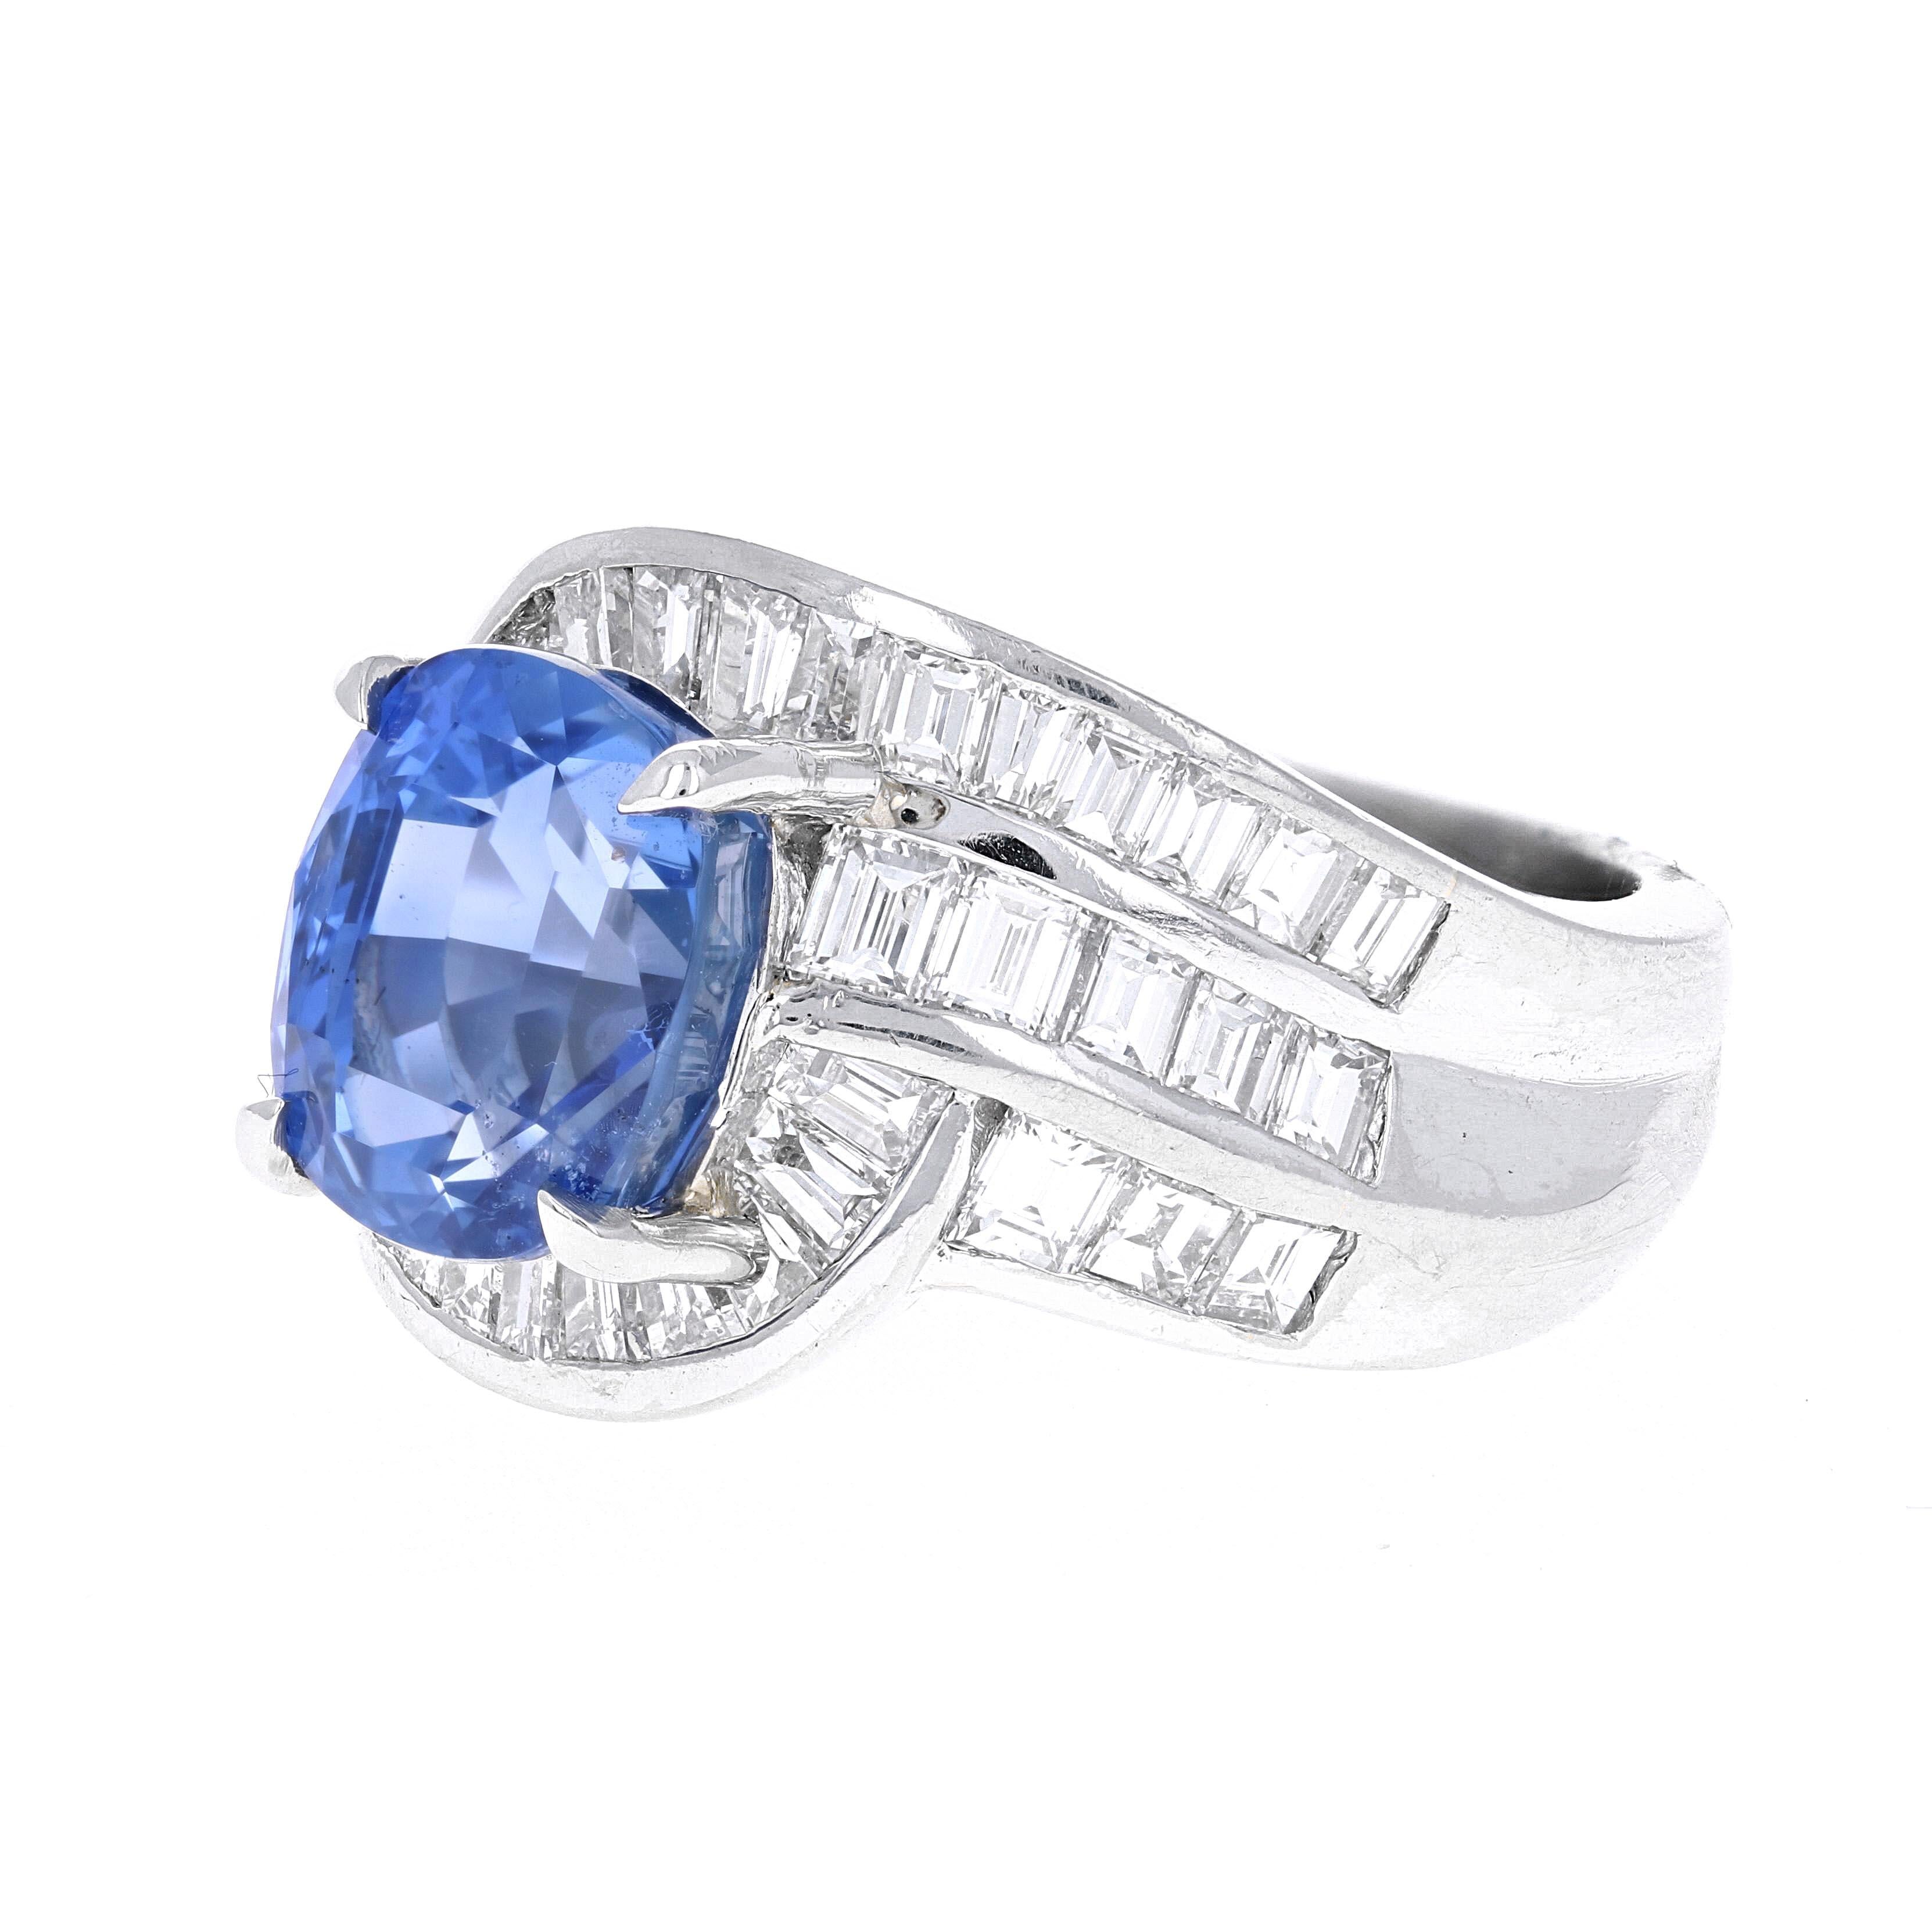 Cette bague cocktail en saphir bleu et diamant de 5,54 carats est magnifiquement réalisée dans une monture en platine unique. La monture est composée de 30 baguettes en diamant, de couleur G-H et de pureté VS-SI, pesant environ 2,39 carats. Le